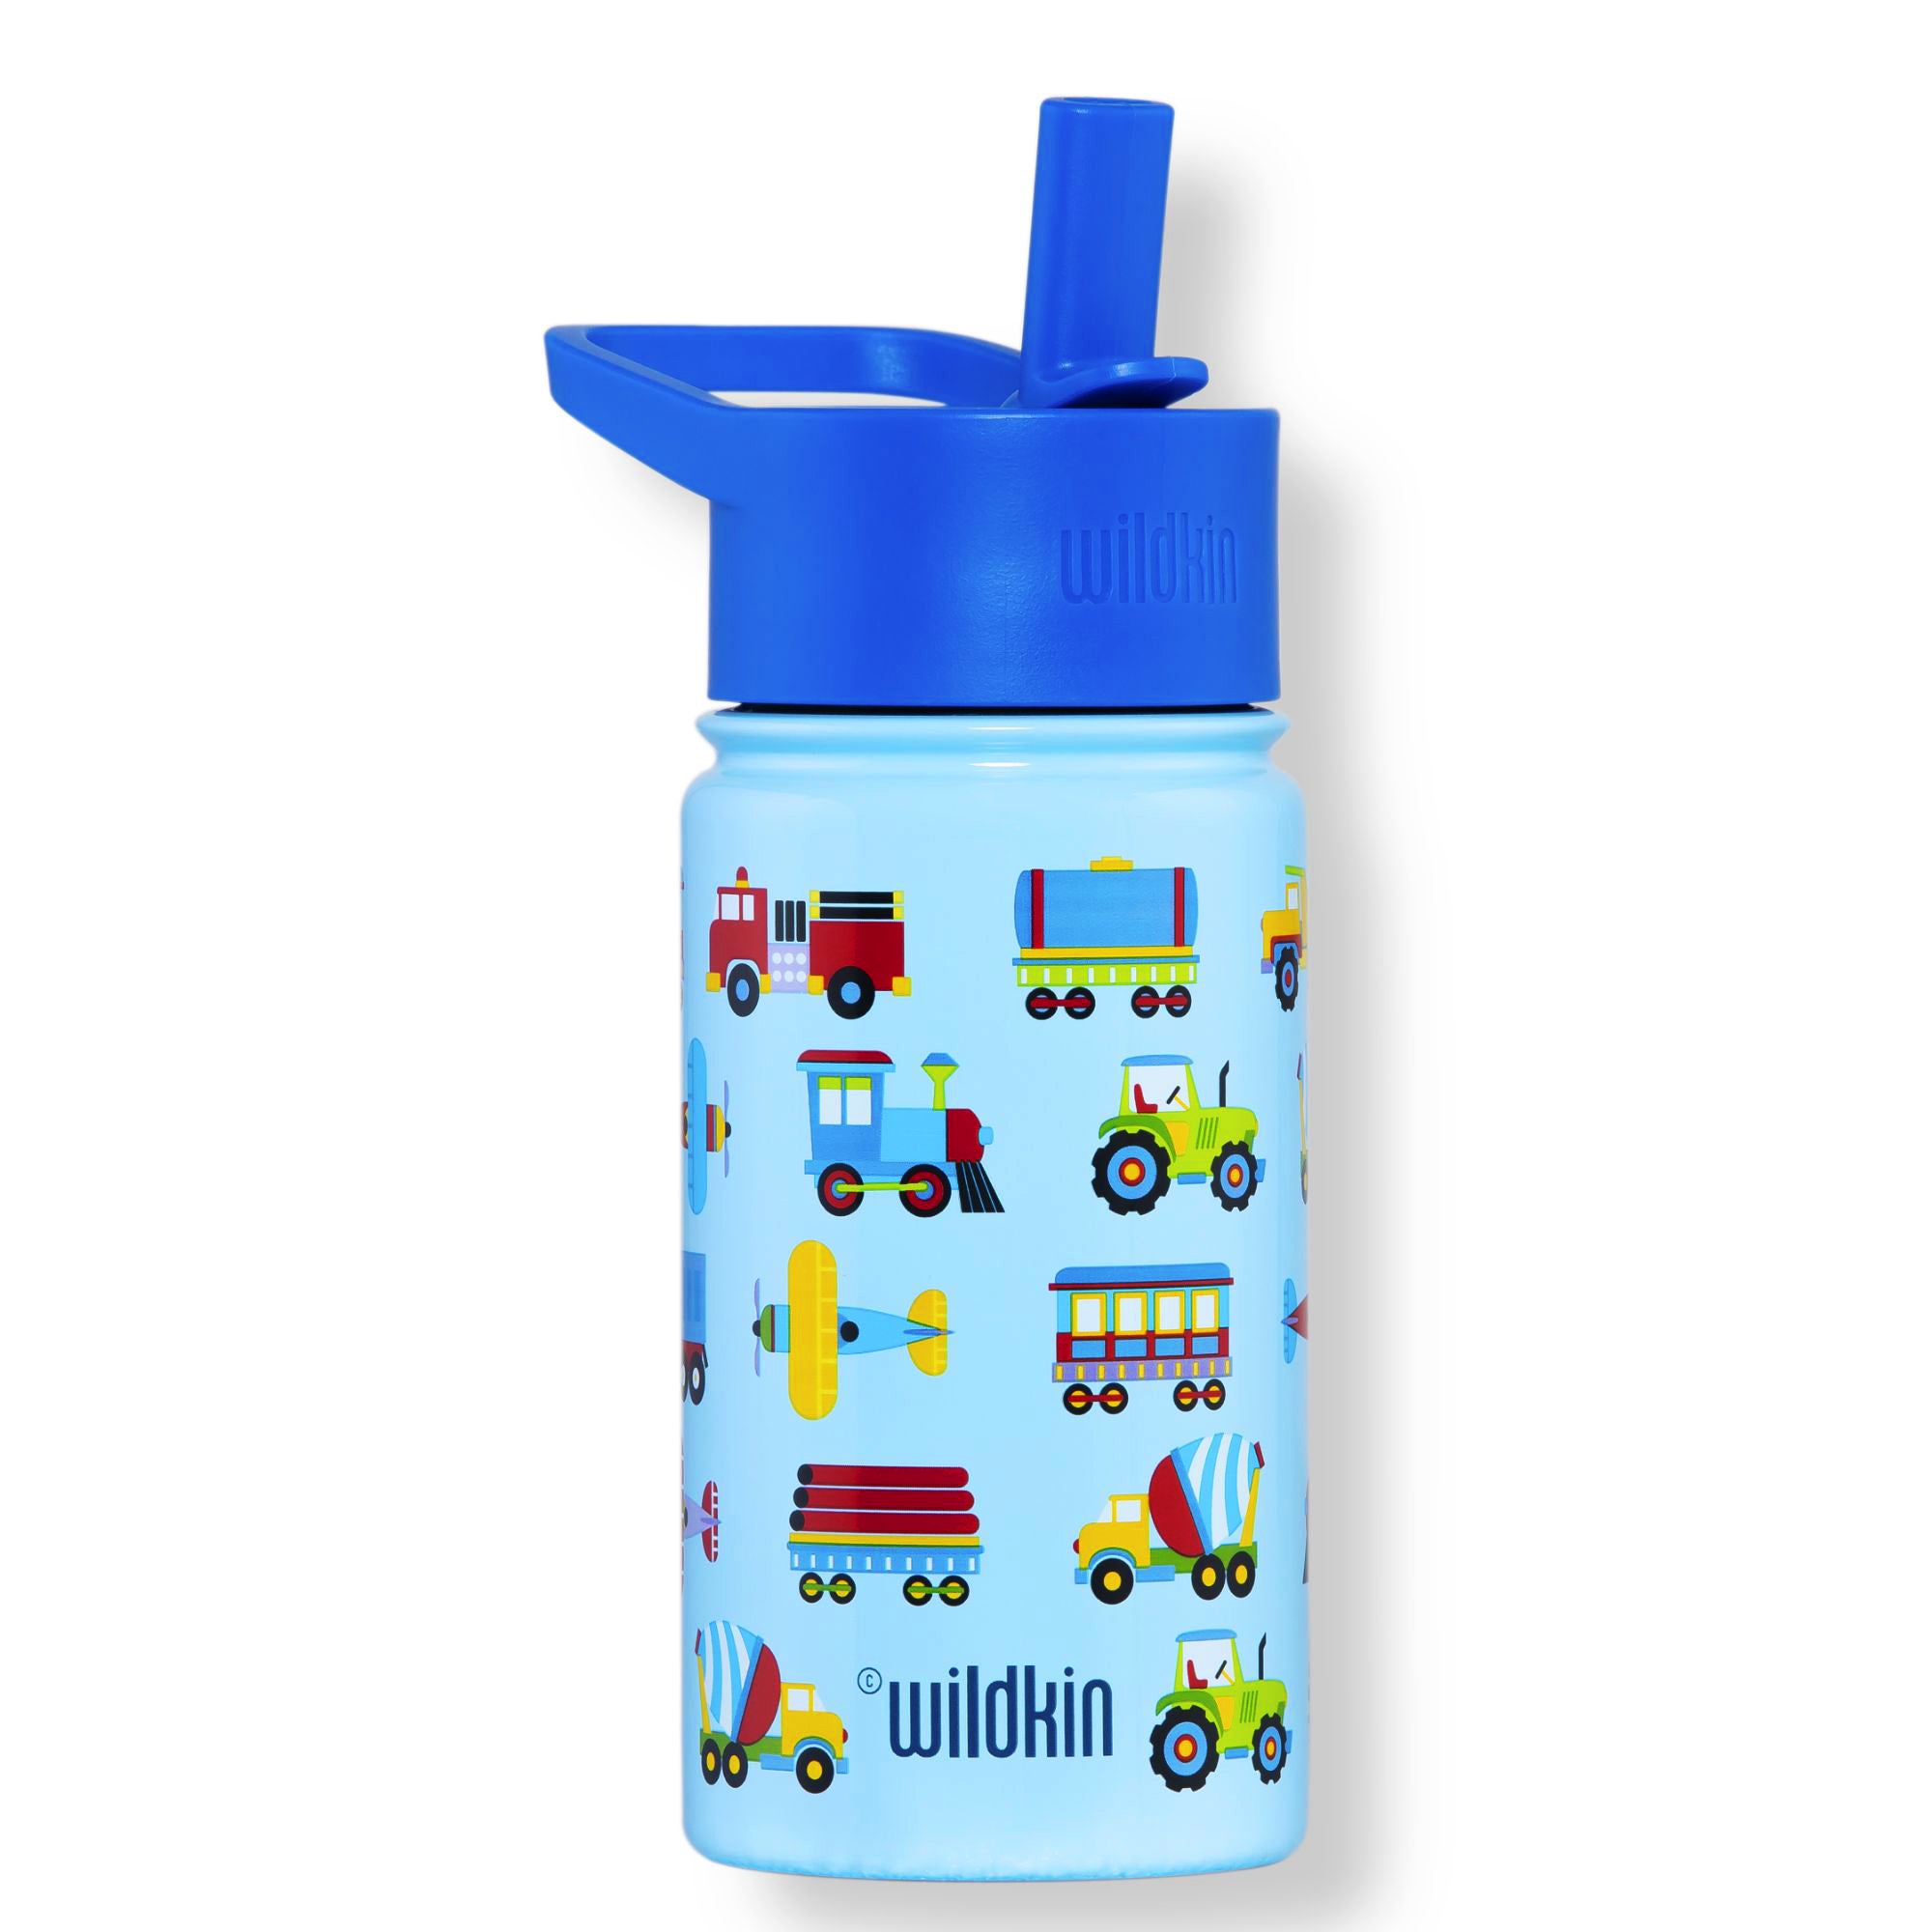 Truck Personalized Kid's Water Bottle